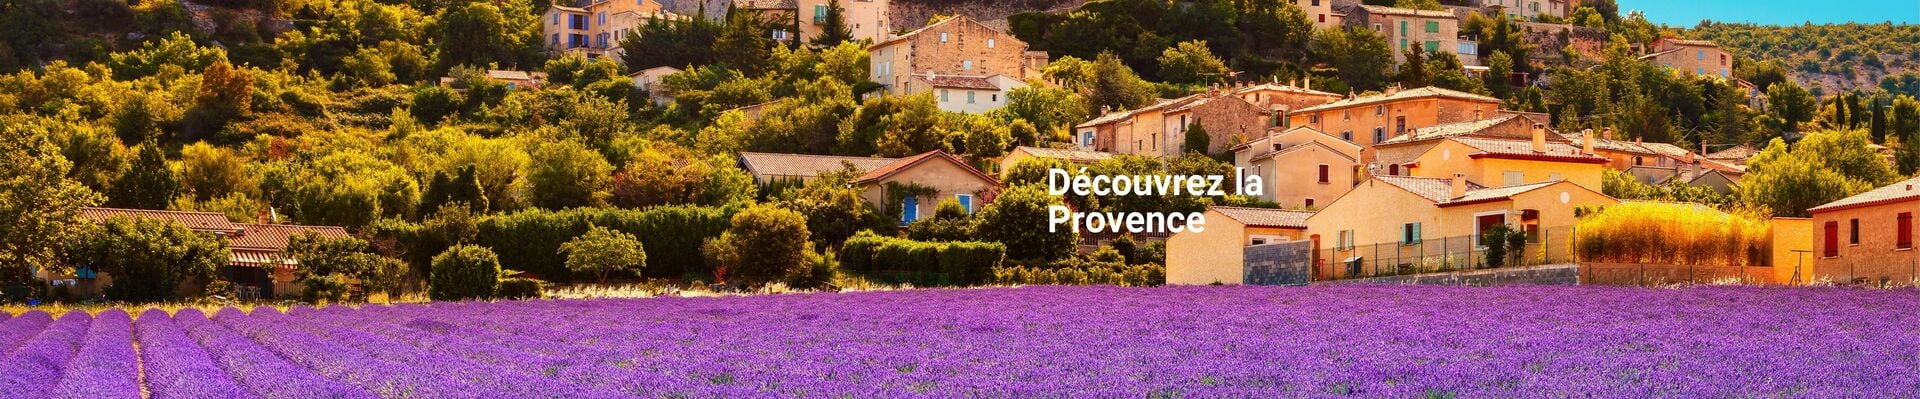 Découvrez La Provence